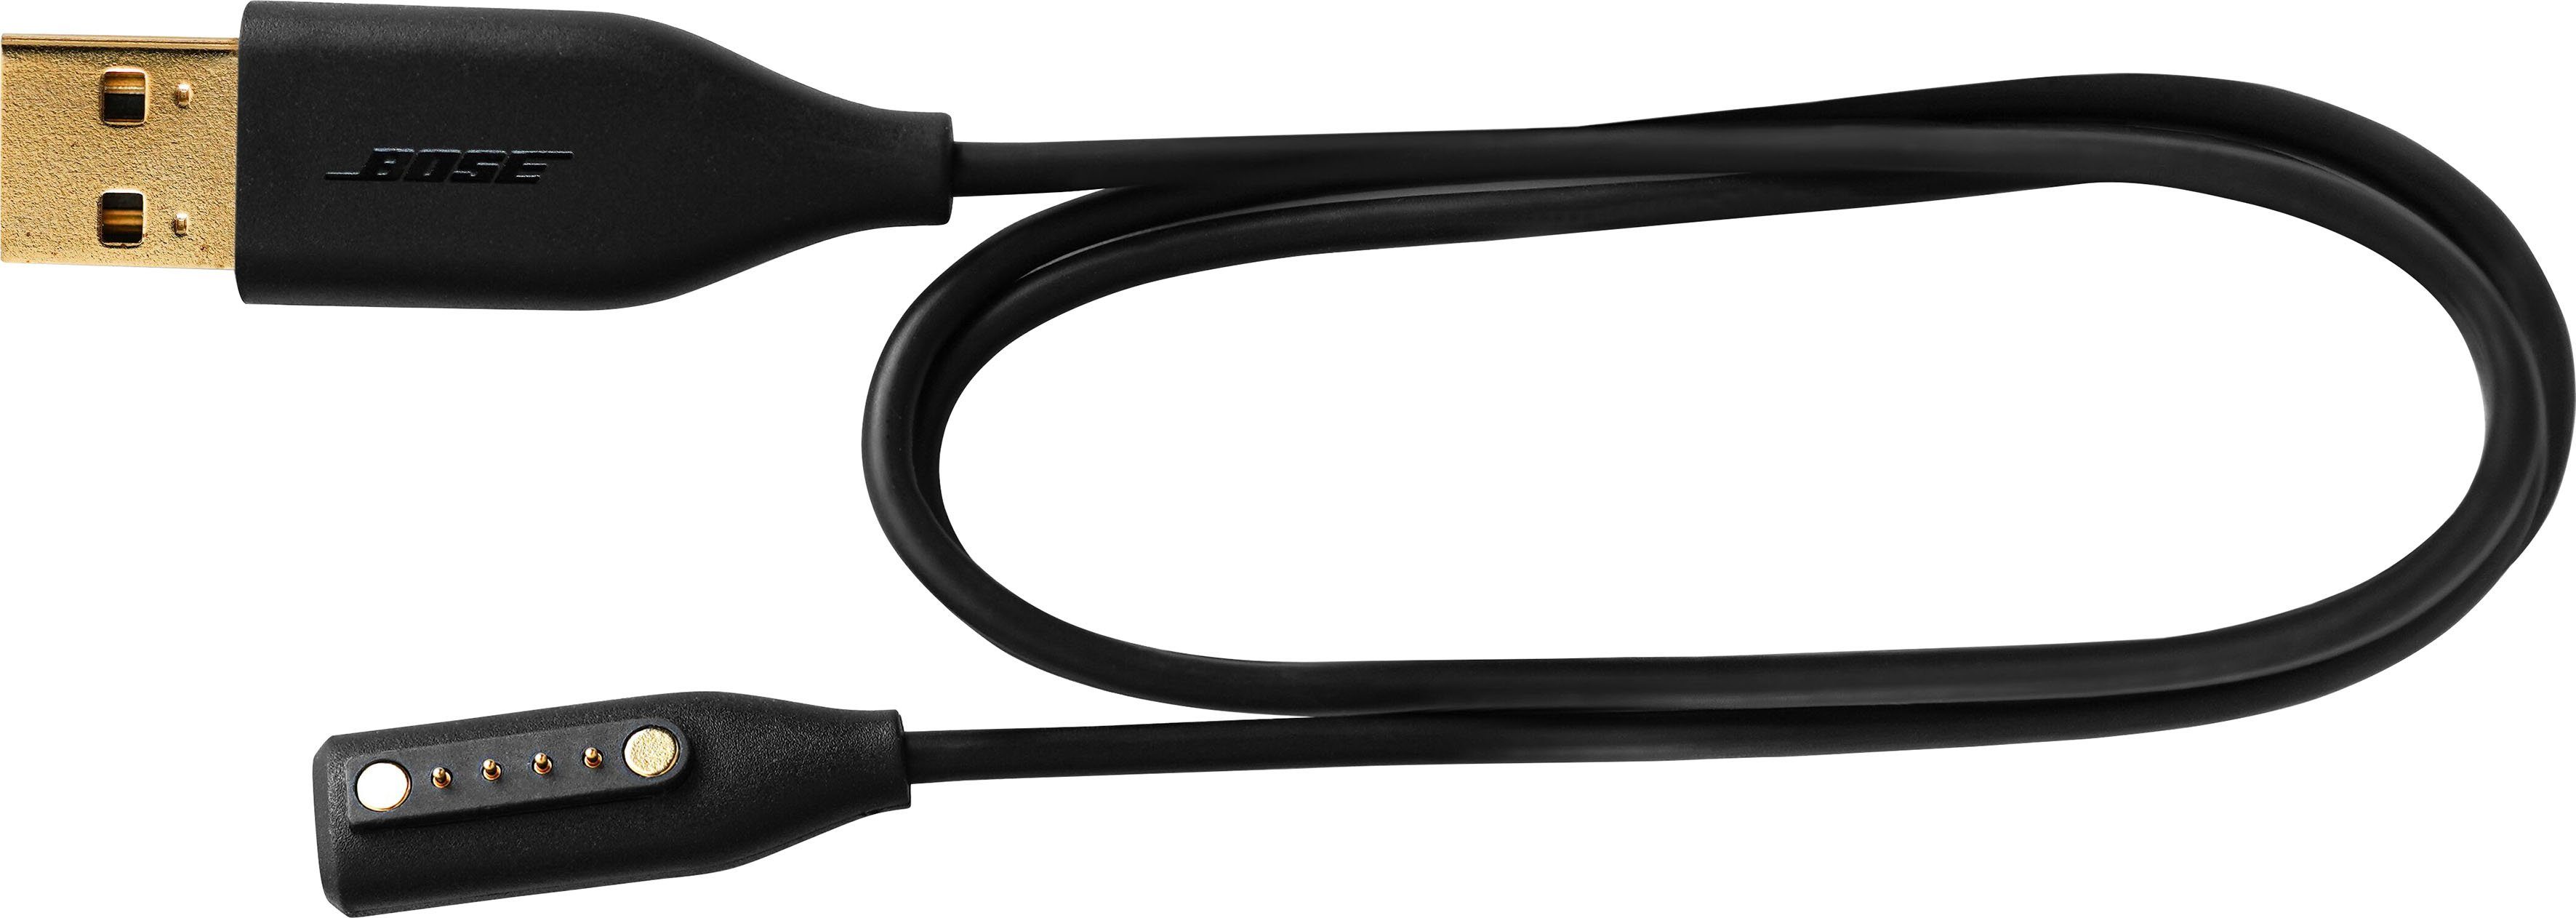 Bose Ersatz-Ladekabel für die Bose Frames Audio-Sonnenbrille Stromkabel